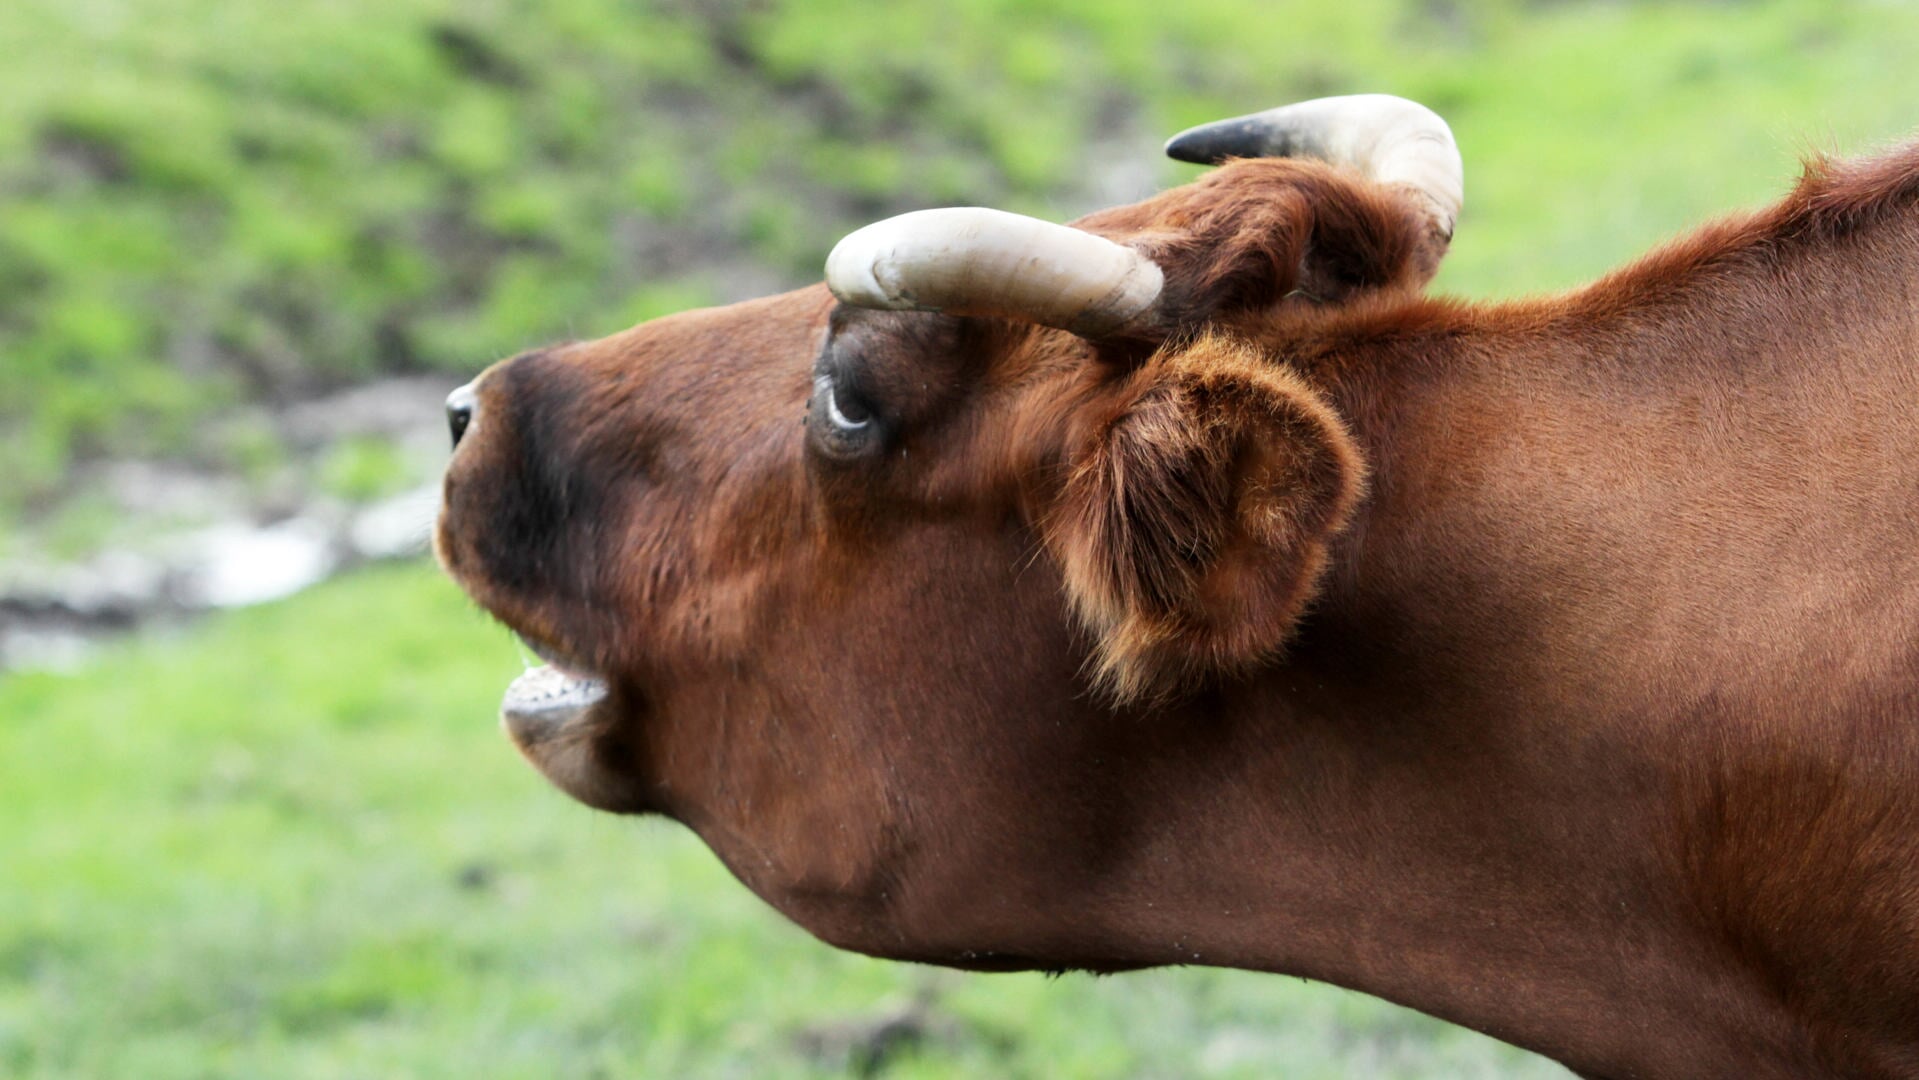 Koeien communiceren met elkaar en met mensen die ze herkennen.